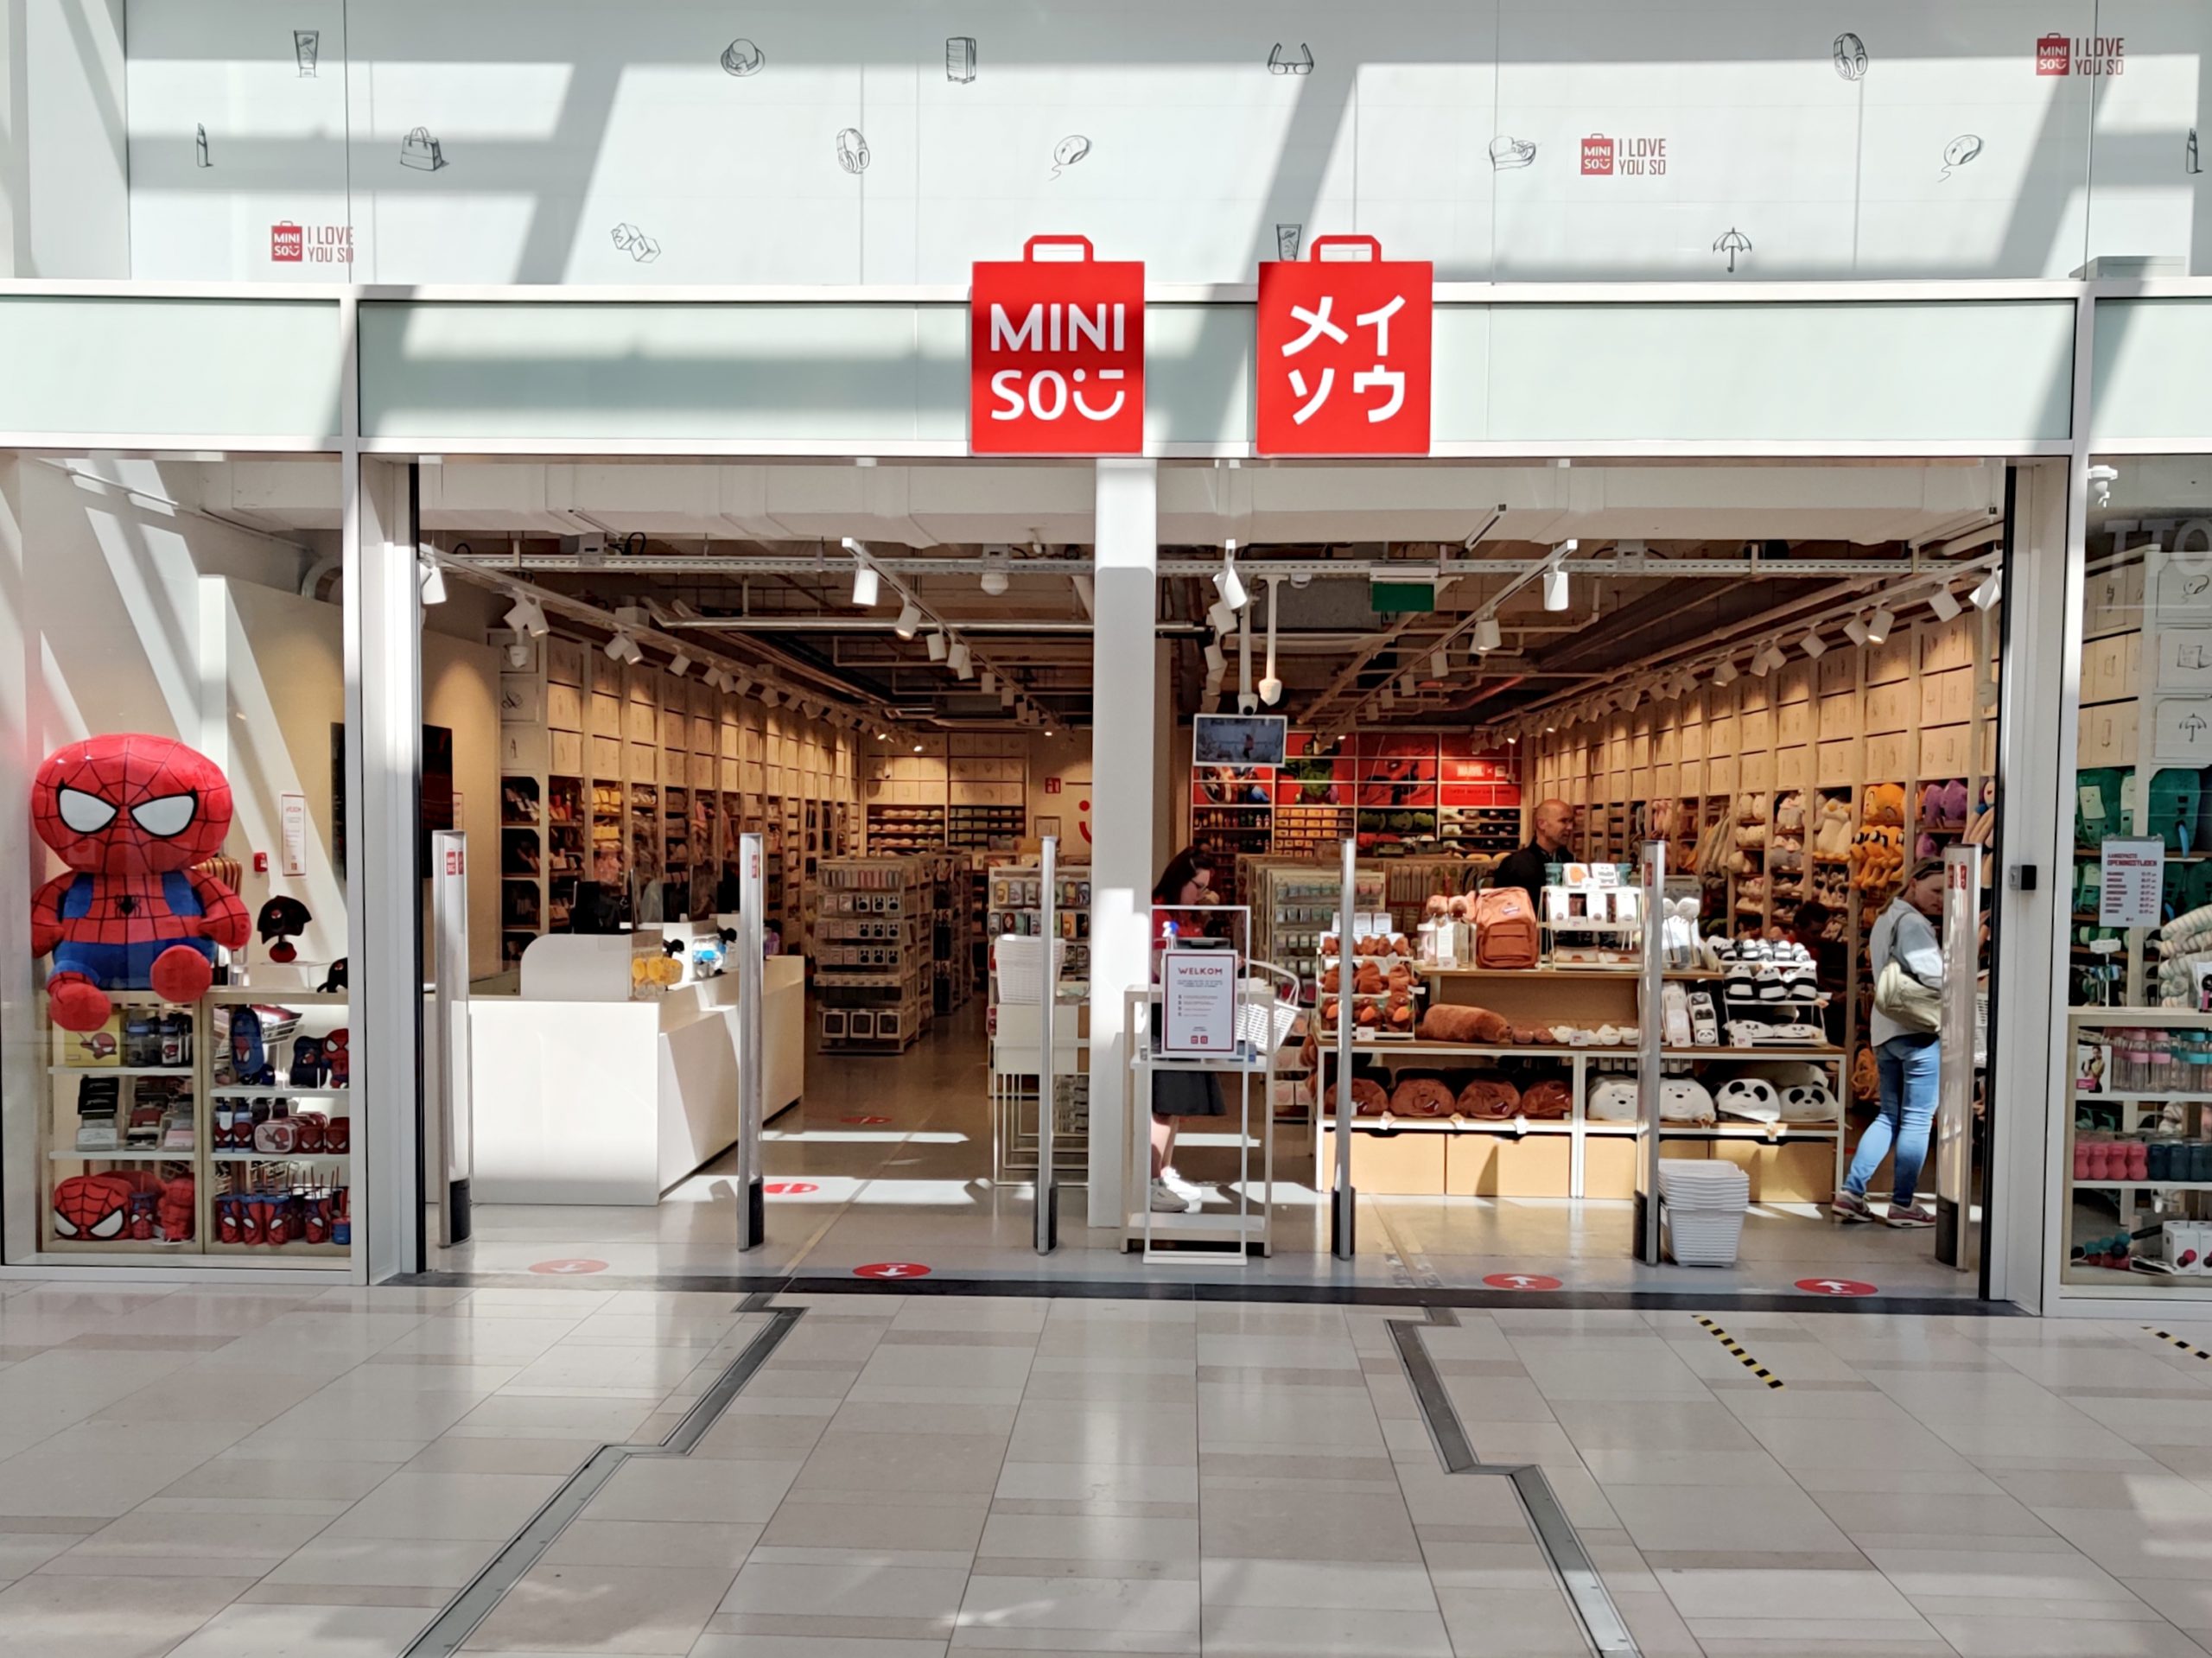 De vestiging van Miniso in winkelcentrum Hoog Catharijne is sinds 1 mei geopend